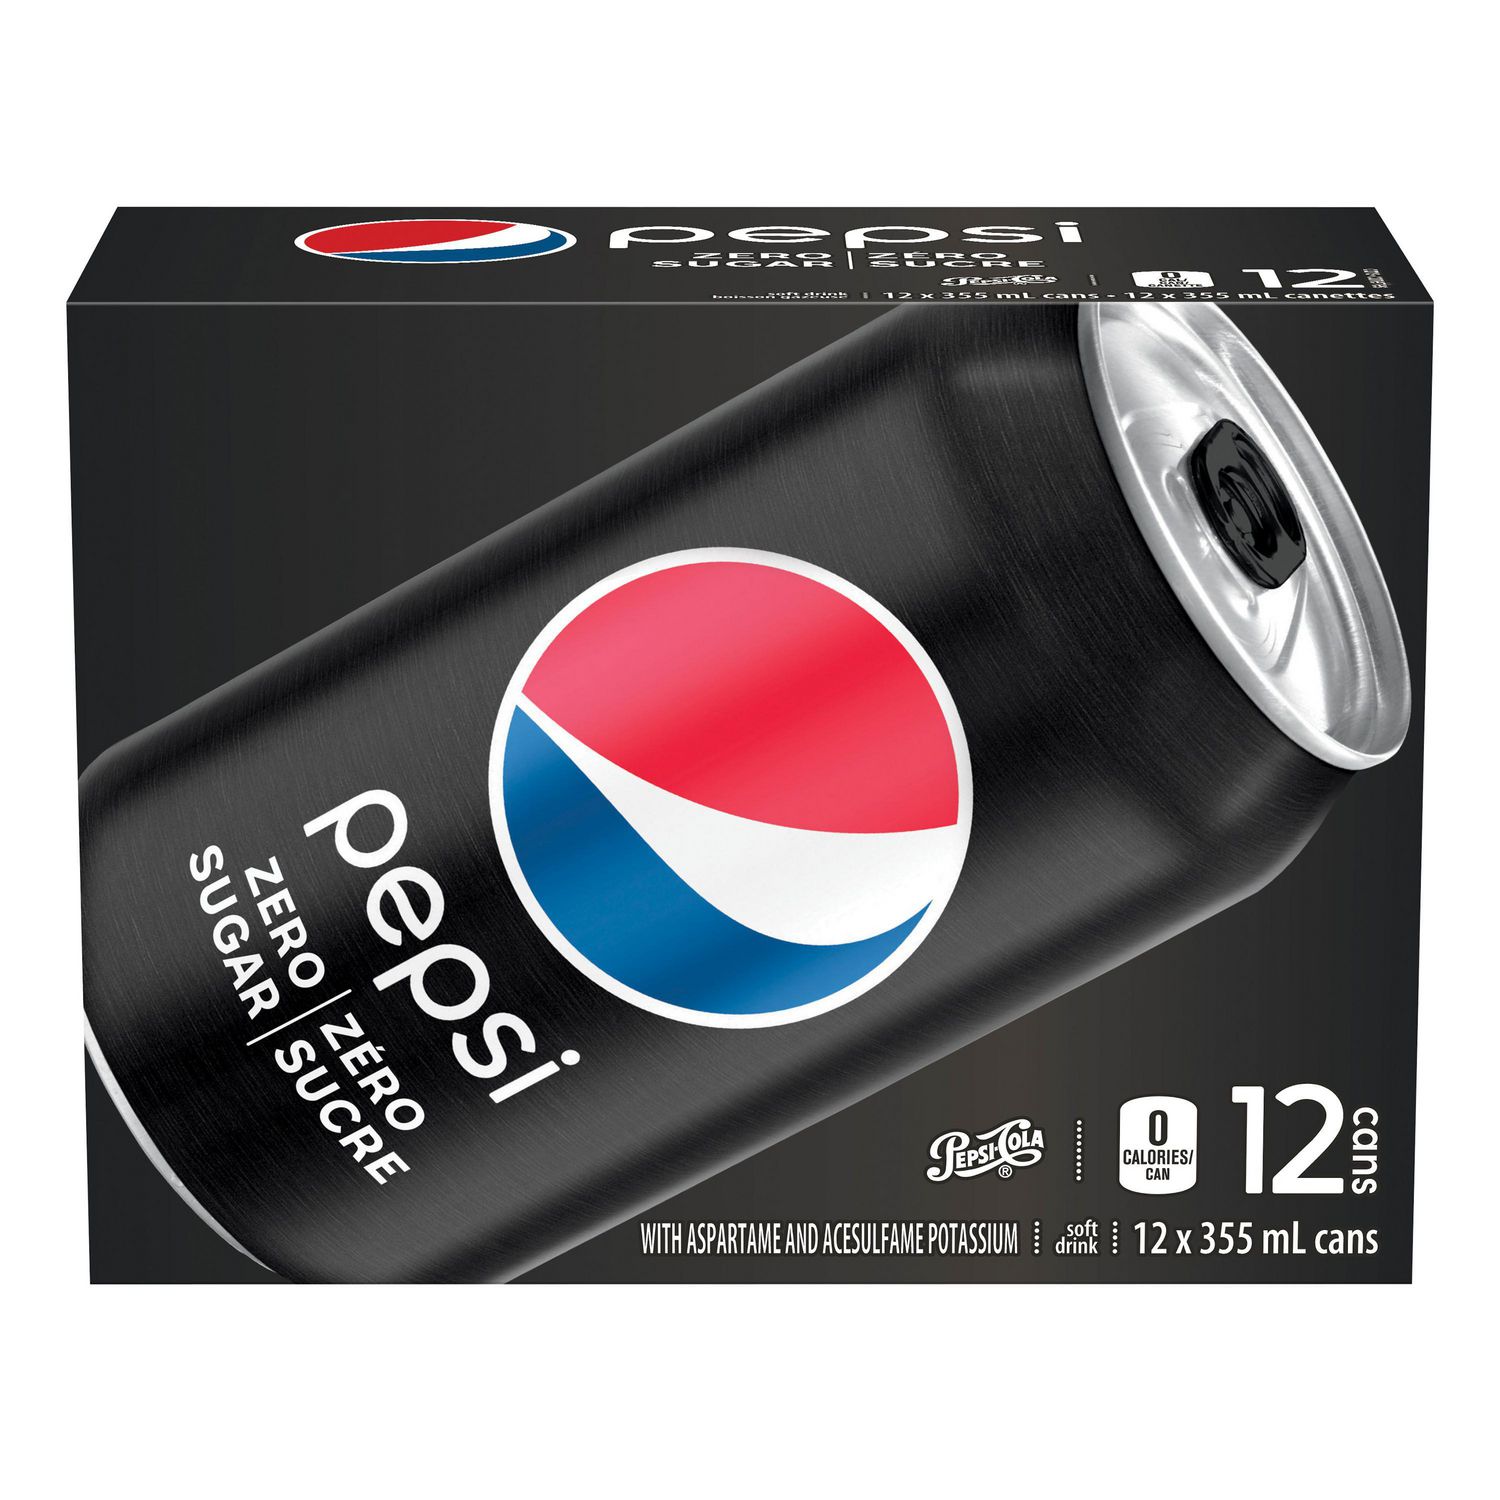 Diet Pepsi Max Nutrition Label